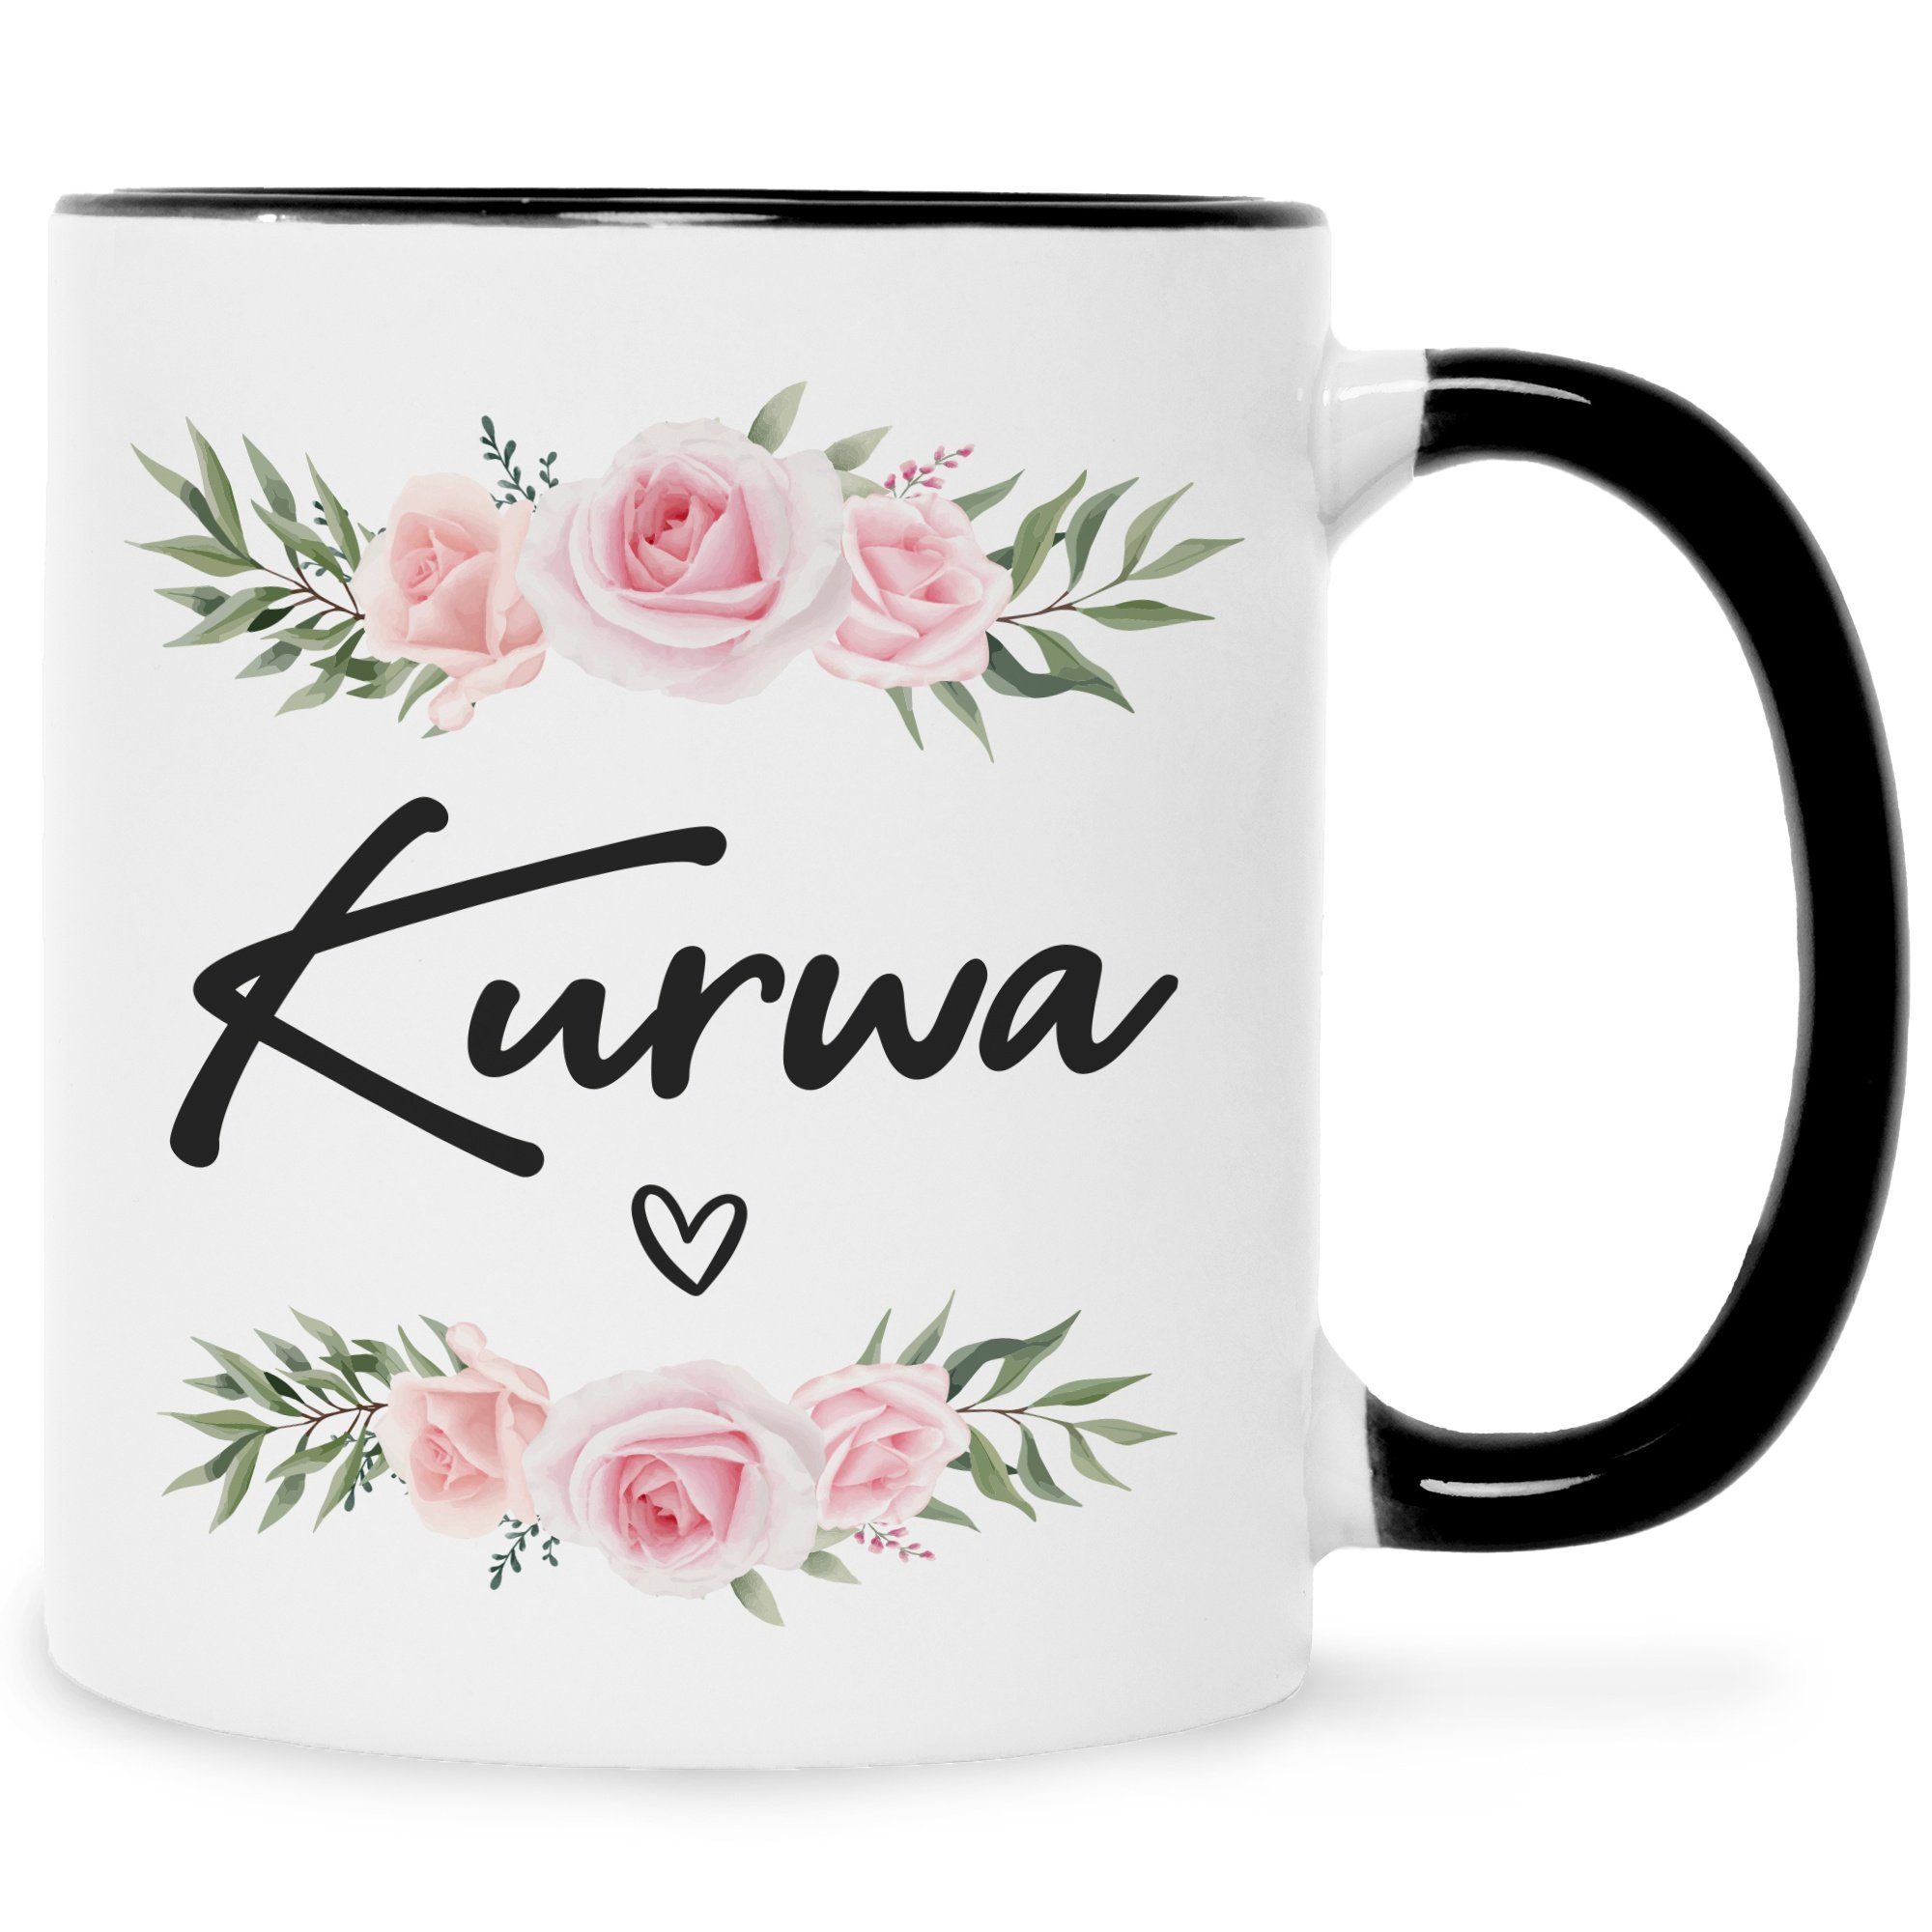 GRAVURZEILE Tasse GRAVURZEILE Tasse mit Spruch - Kurwa - Lustiges Geschenk für Freunde - Geschenk für Frauen & Männer - Geschenk für Sie & Ihn - Kaffeetasse Kaffeebecher Teetasse Schwarz Weiß